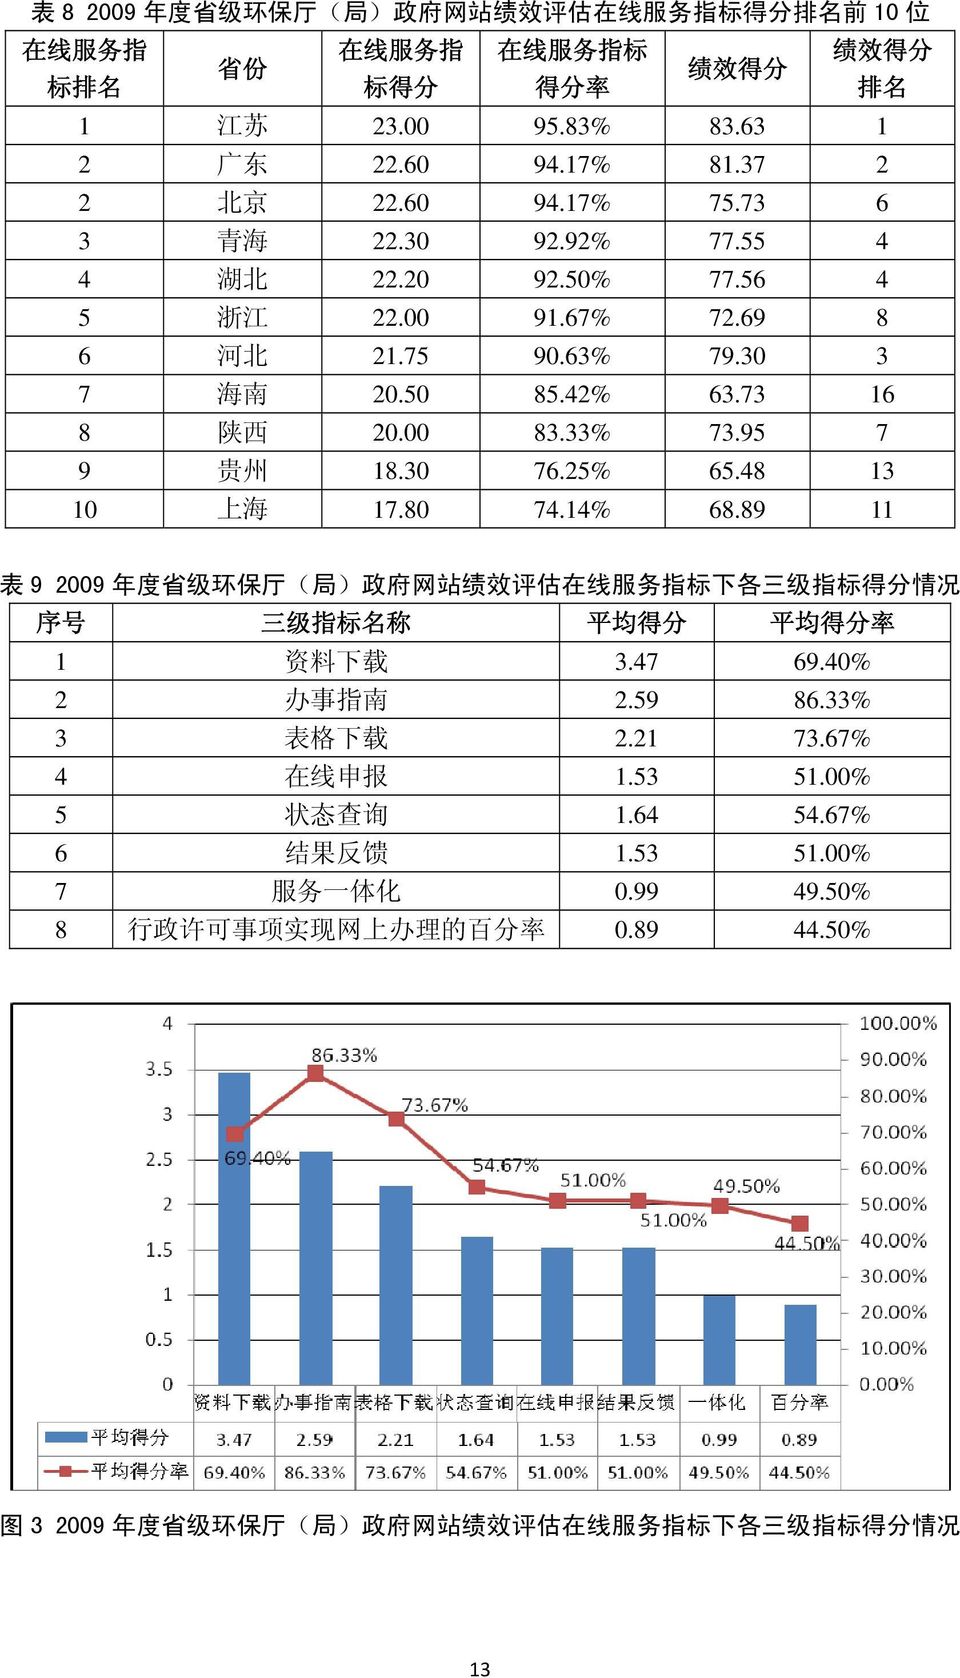 95 7 9 贵 州 18.30 76.25% 65.48 13 10 上 海 17.80 74.14% 68.89 11 表 9 2009 年 度 省 级 环 保 厅 ( 局 ) 政 府 网 站 绩 效 评 估 在 线 服 务 指 标 下 各 三 级 指 标 得 分 情 况 序 号 三 级 指 标 名 称 平 均 得 分 平 均 得 分 率 1 资 料 下 载 3.47 69.